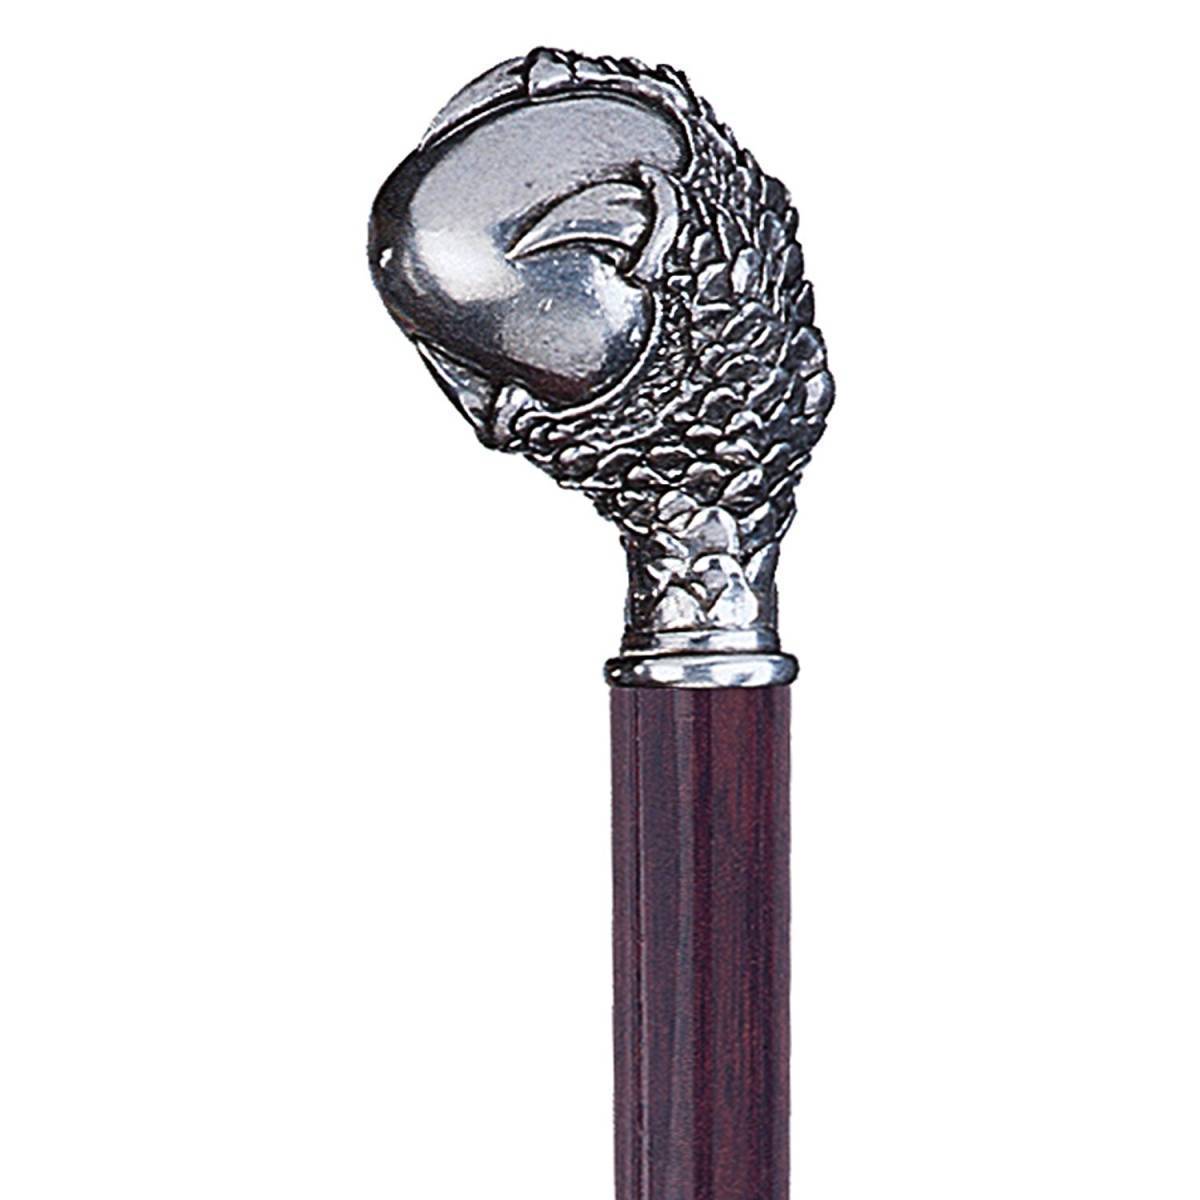 デザイン・トスカノ製 珠を掴むドラゴンの手 装飾ハンドル飾り ウォーキング・スティック 紳士用 杖/プレゼント 贈り物 記念品(輸入品) 2